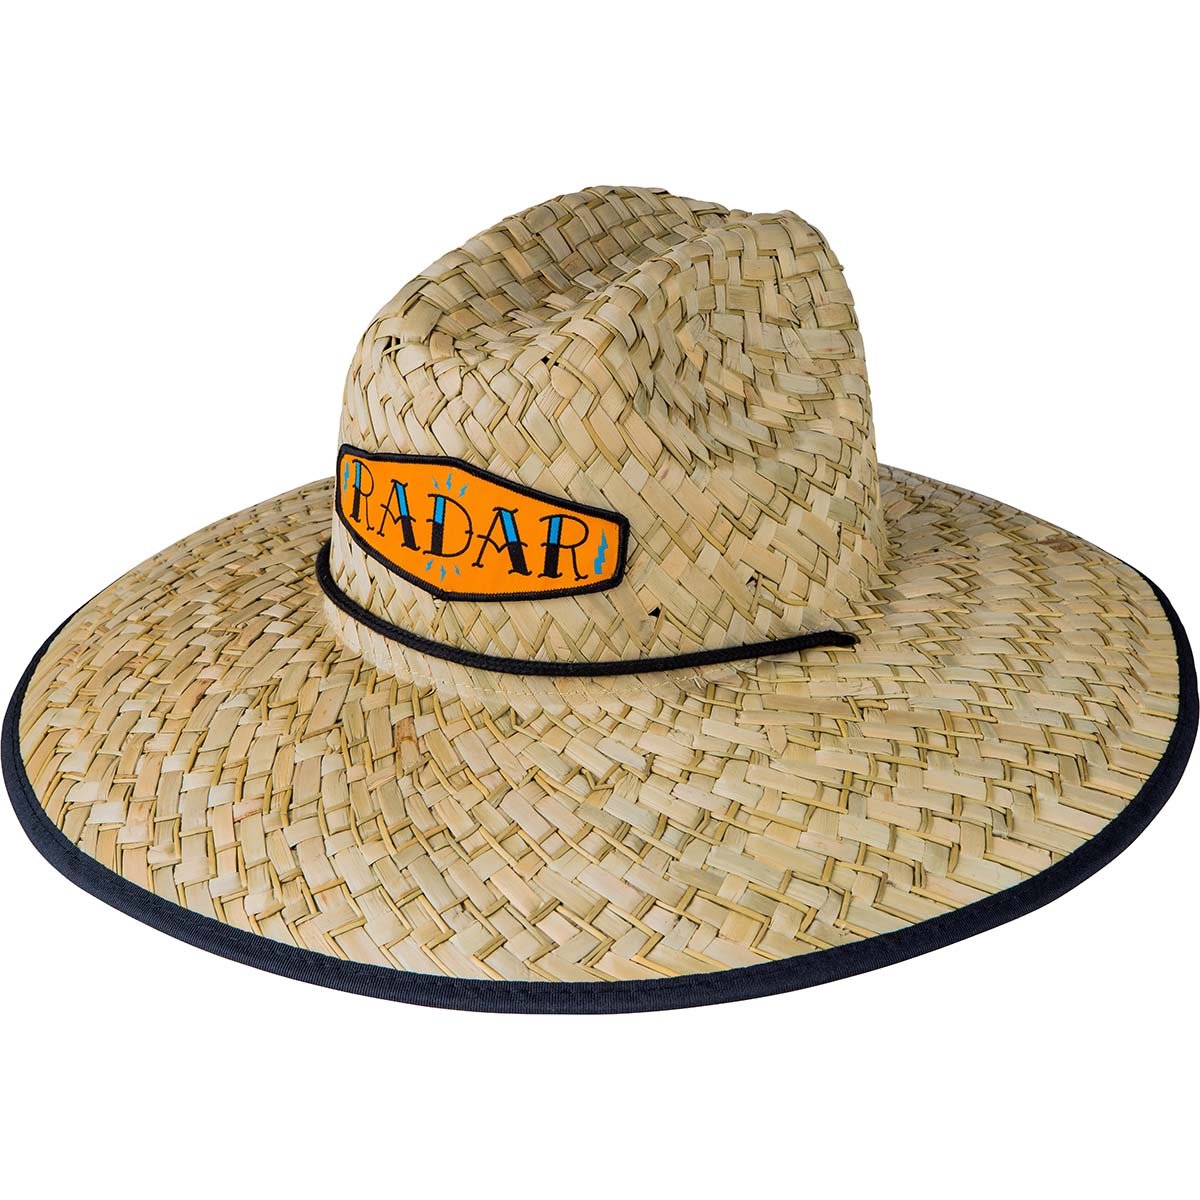 Radar Paddler's Sun Hat in Tan Straw / Collage Nylon - BoardCo